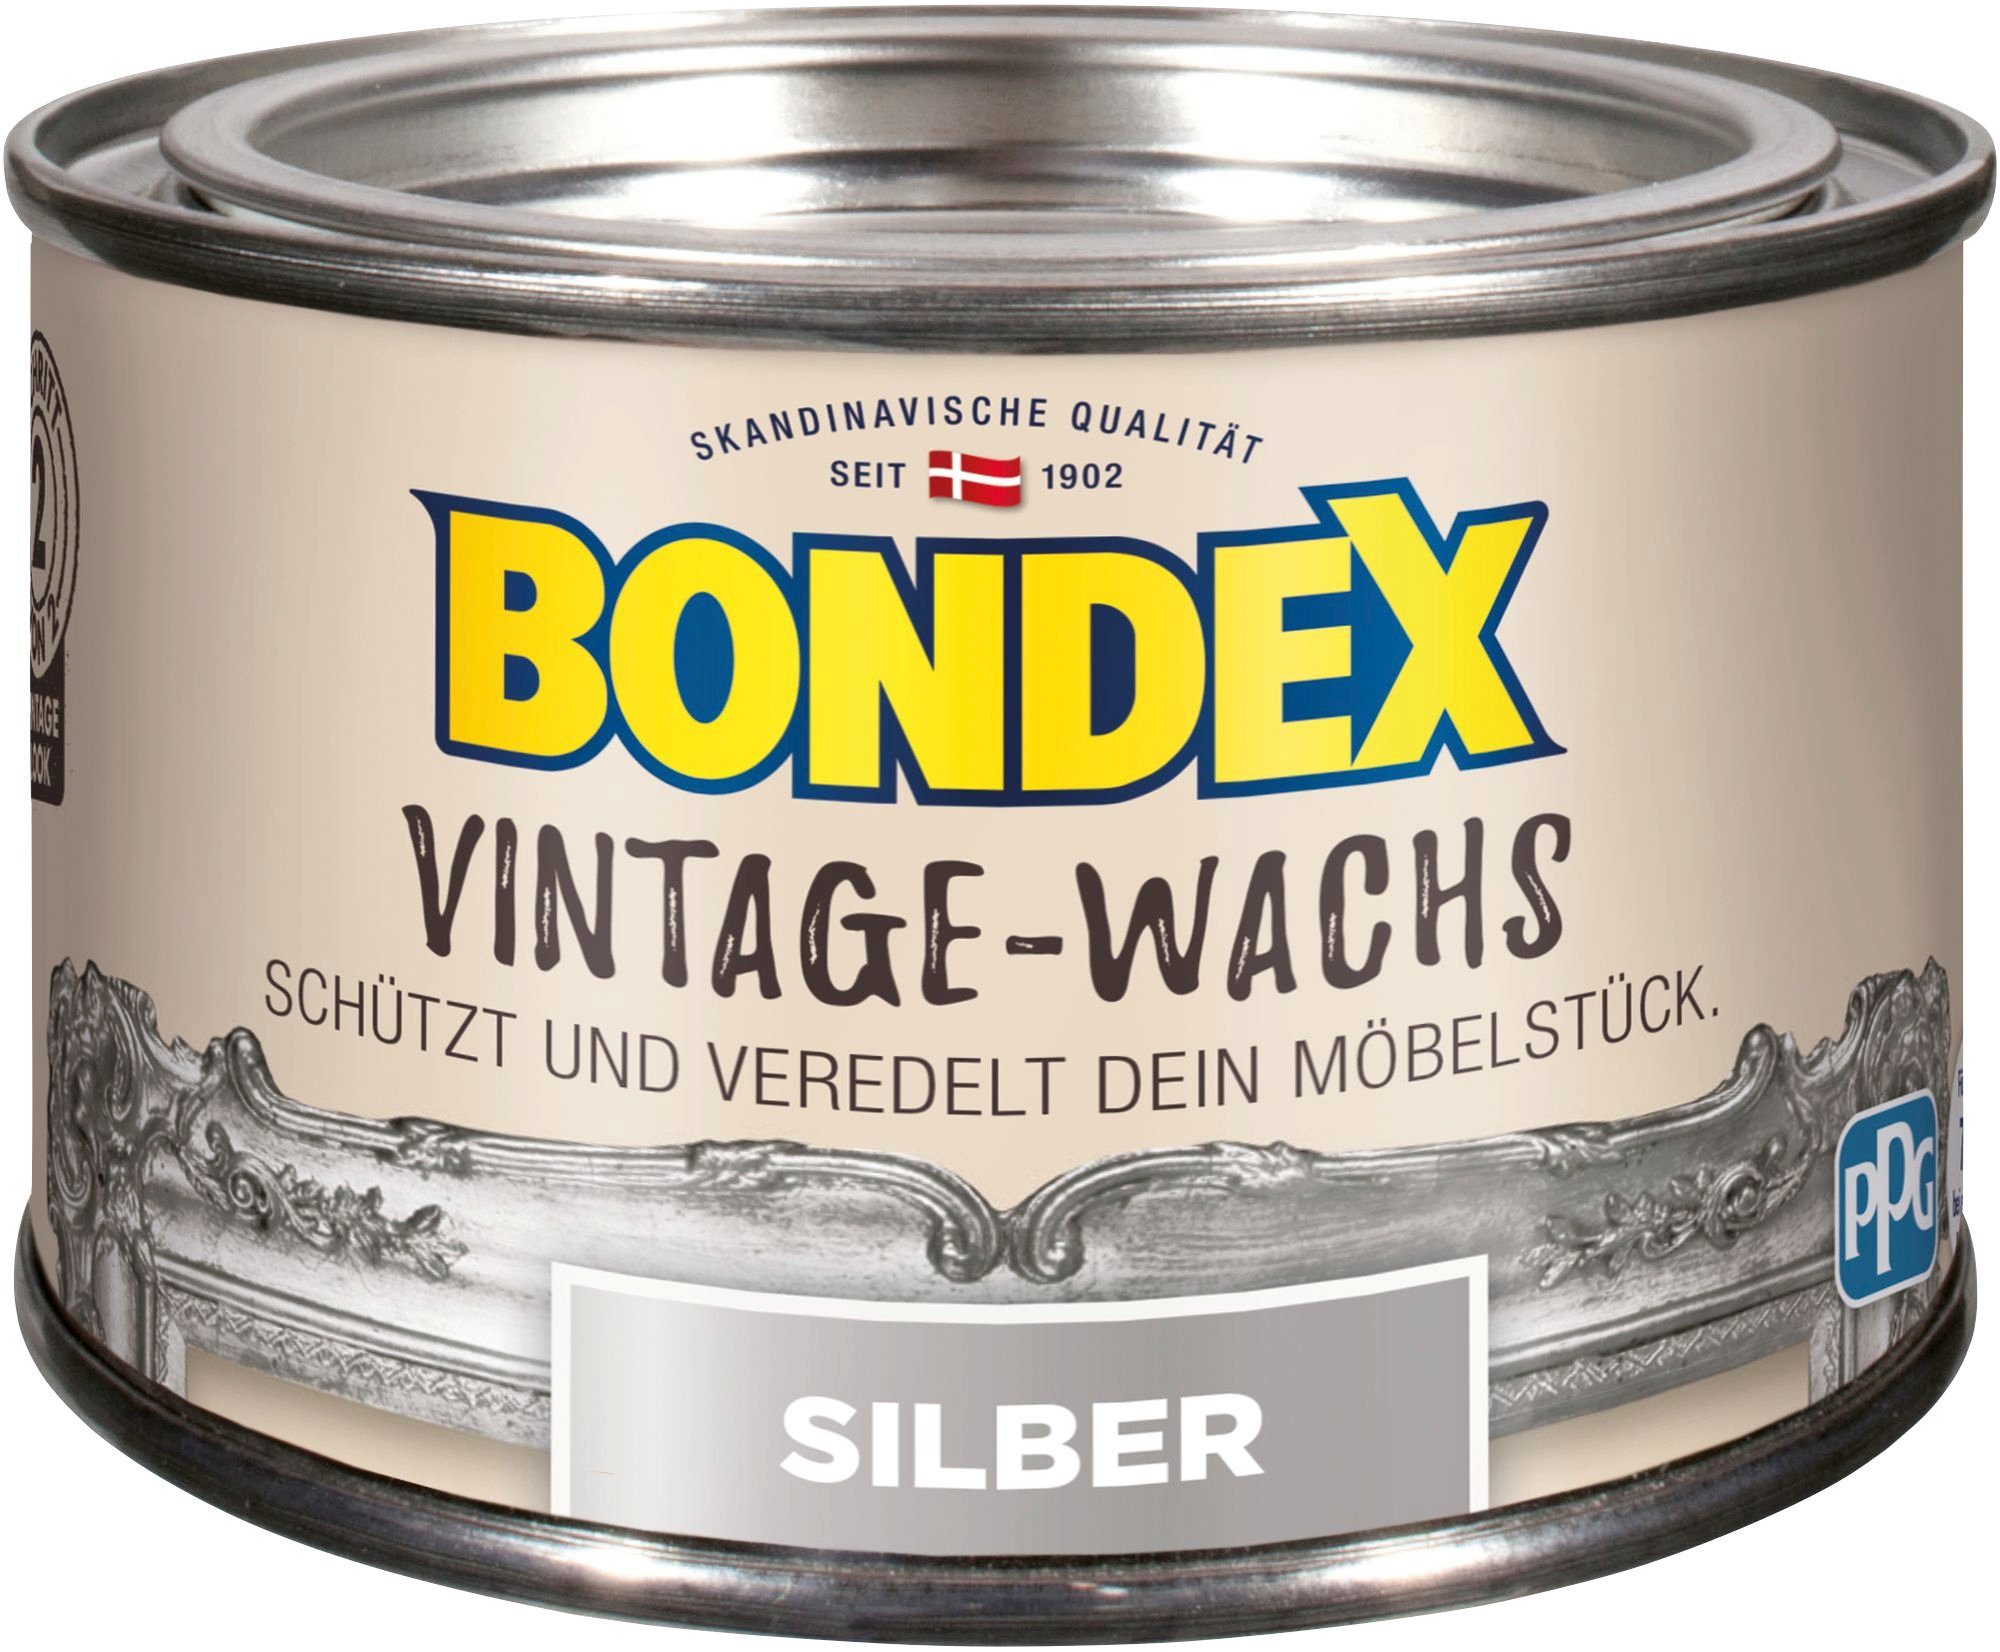 Bondex VINTAGE-WACHS Grau Schutzwachs, zum Schutz und Veredelung der Möbelstücke, 0,25 l silberfarben